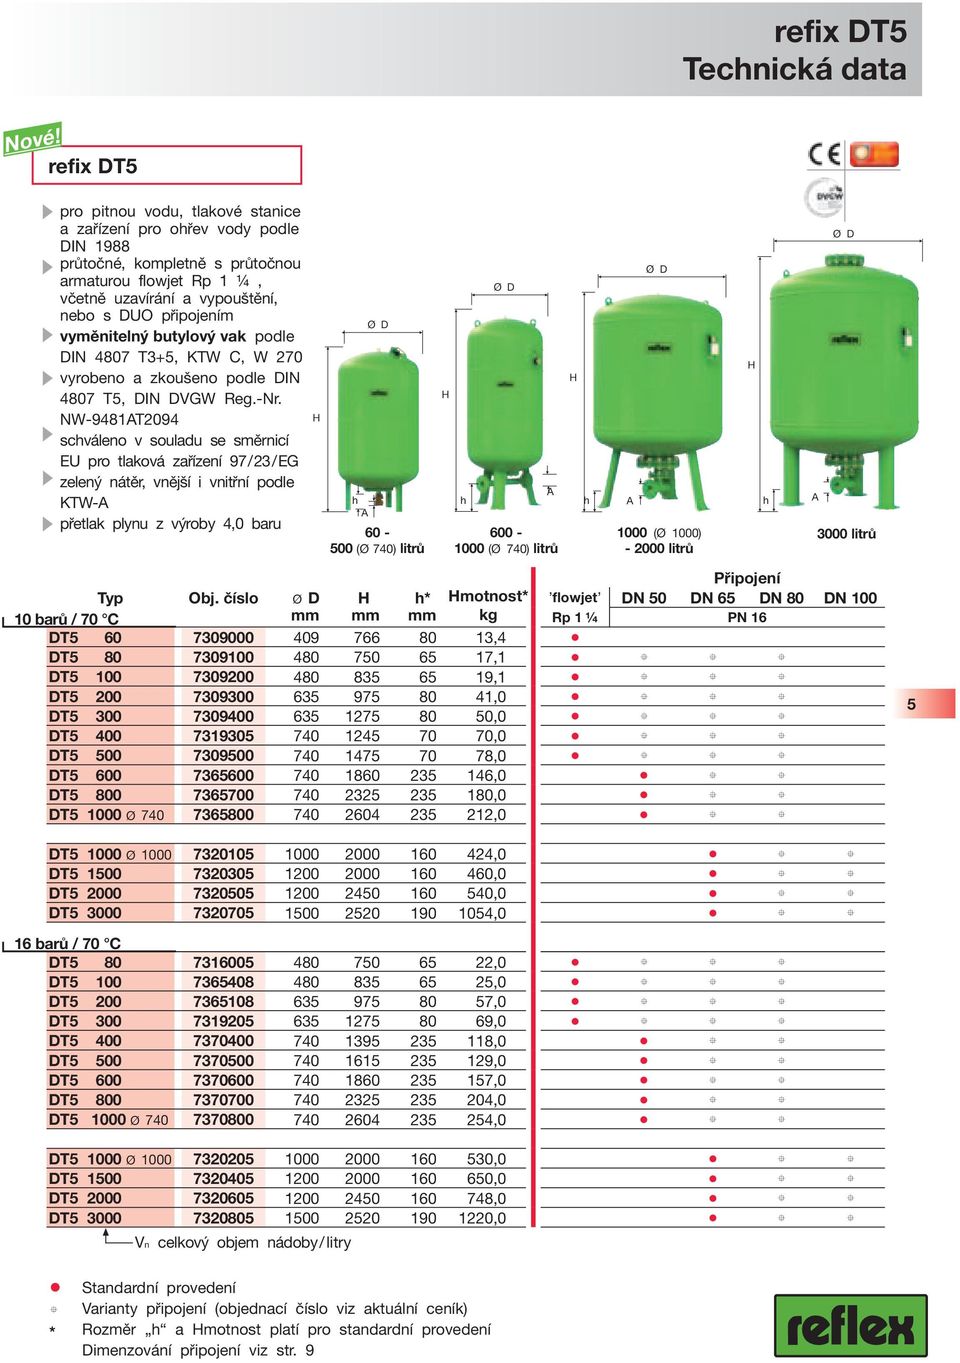 vyměnitelný butylový vak podle DIN 4807 T3+5, KTW C, W 270 vyrobeno a zkoušeno podle DIN 4807 T5, DIN DVGW Reg.-Nr.